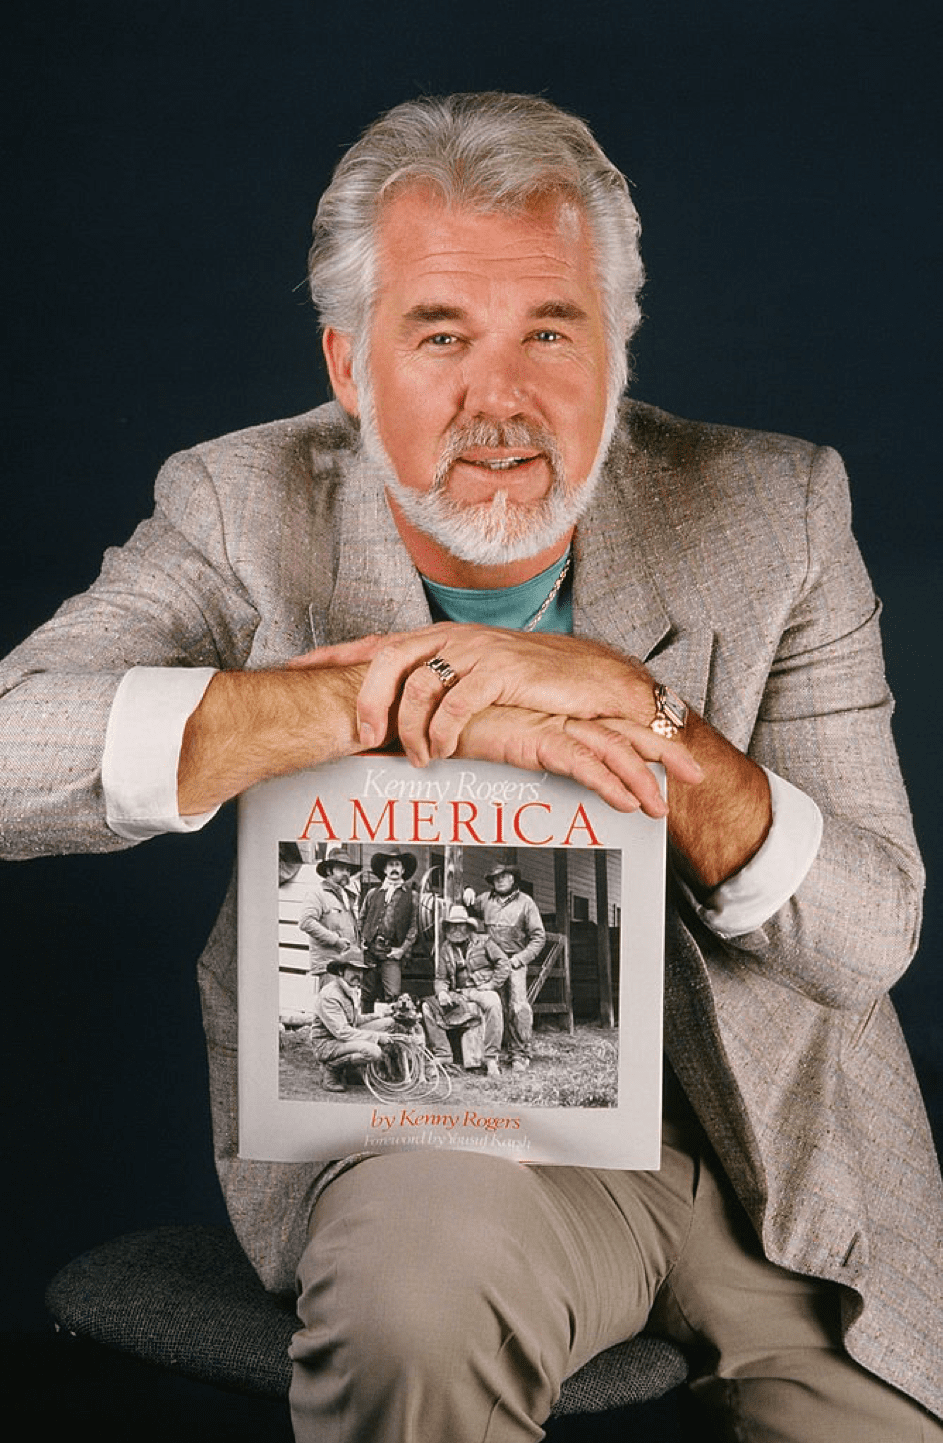 Country Music Sänger, Schauspieler und Fotograf Kenny Rogers, während einer 1986 Los Angeles Studio Foto Session. Rogers machte Werbung für seinen Start in der Fotografie und die Publikation seines Fotobuchs "America". | Quelle: Getty Images